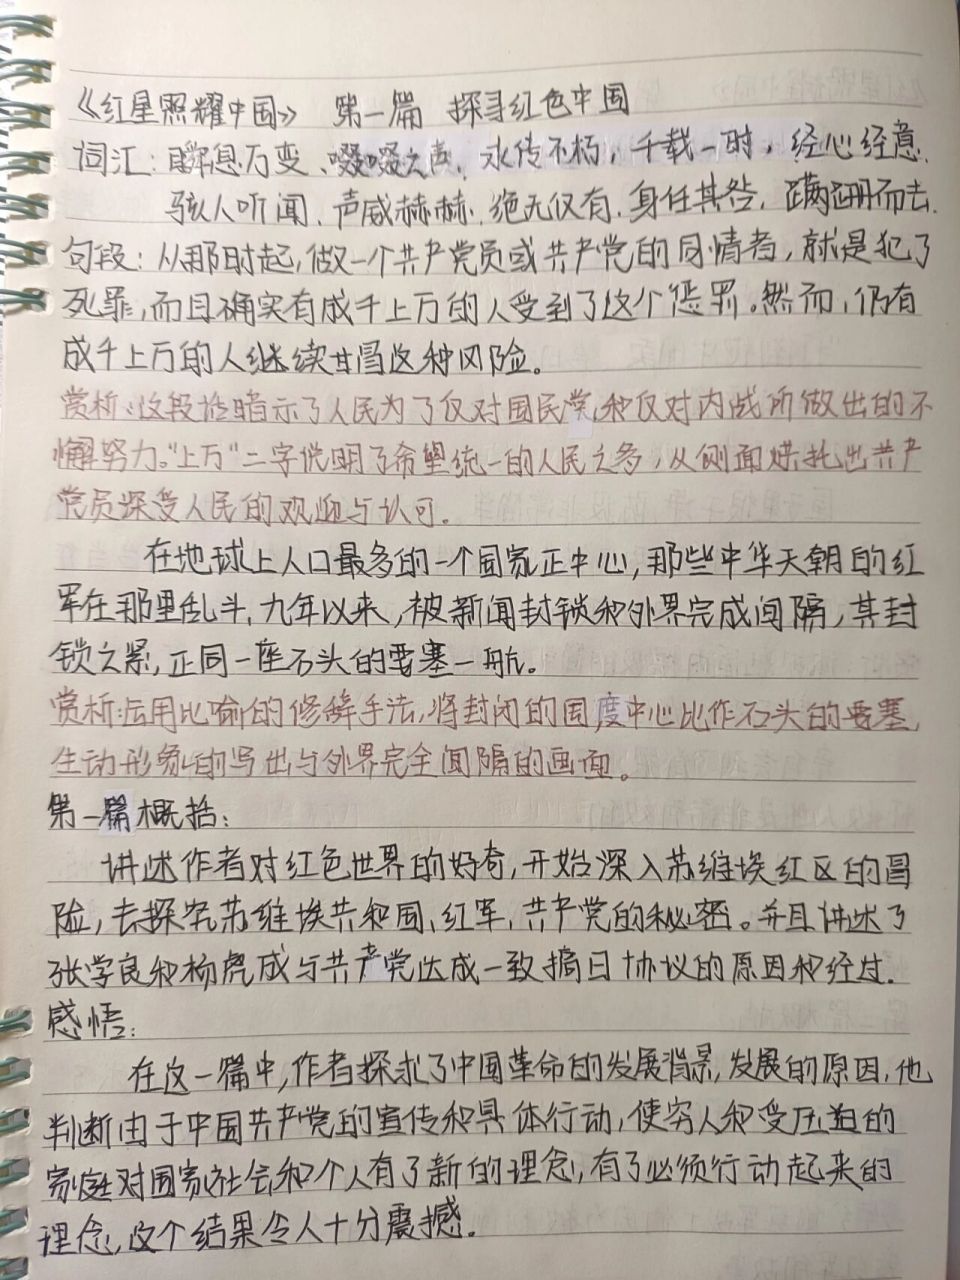 《红星照耀中国》第一篇 读书笔记   开始更笔记啦,有人需要这份笔记